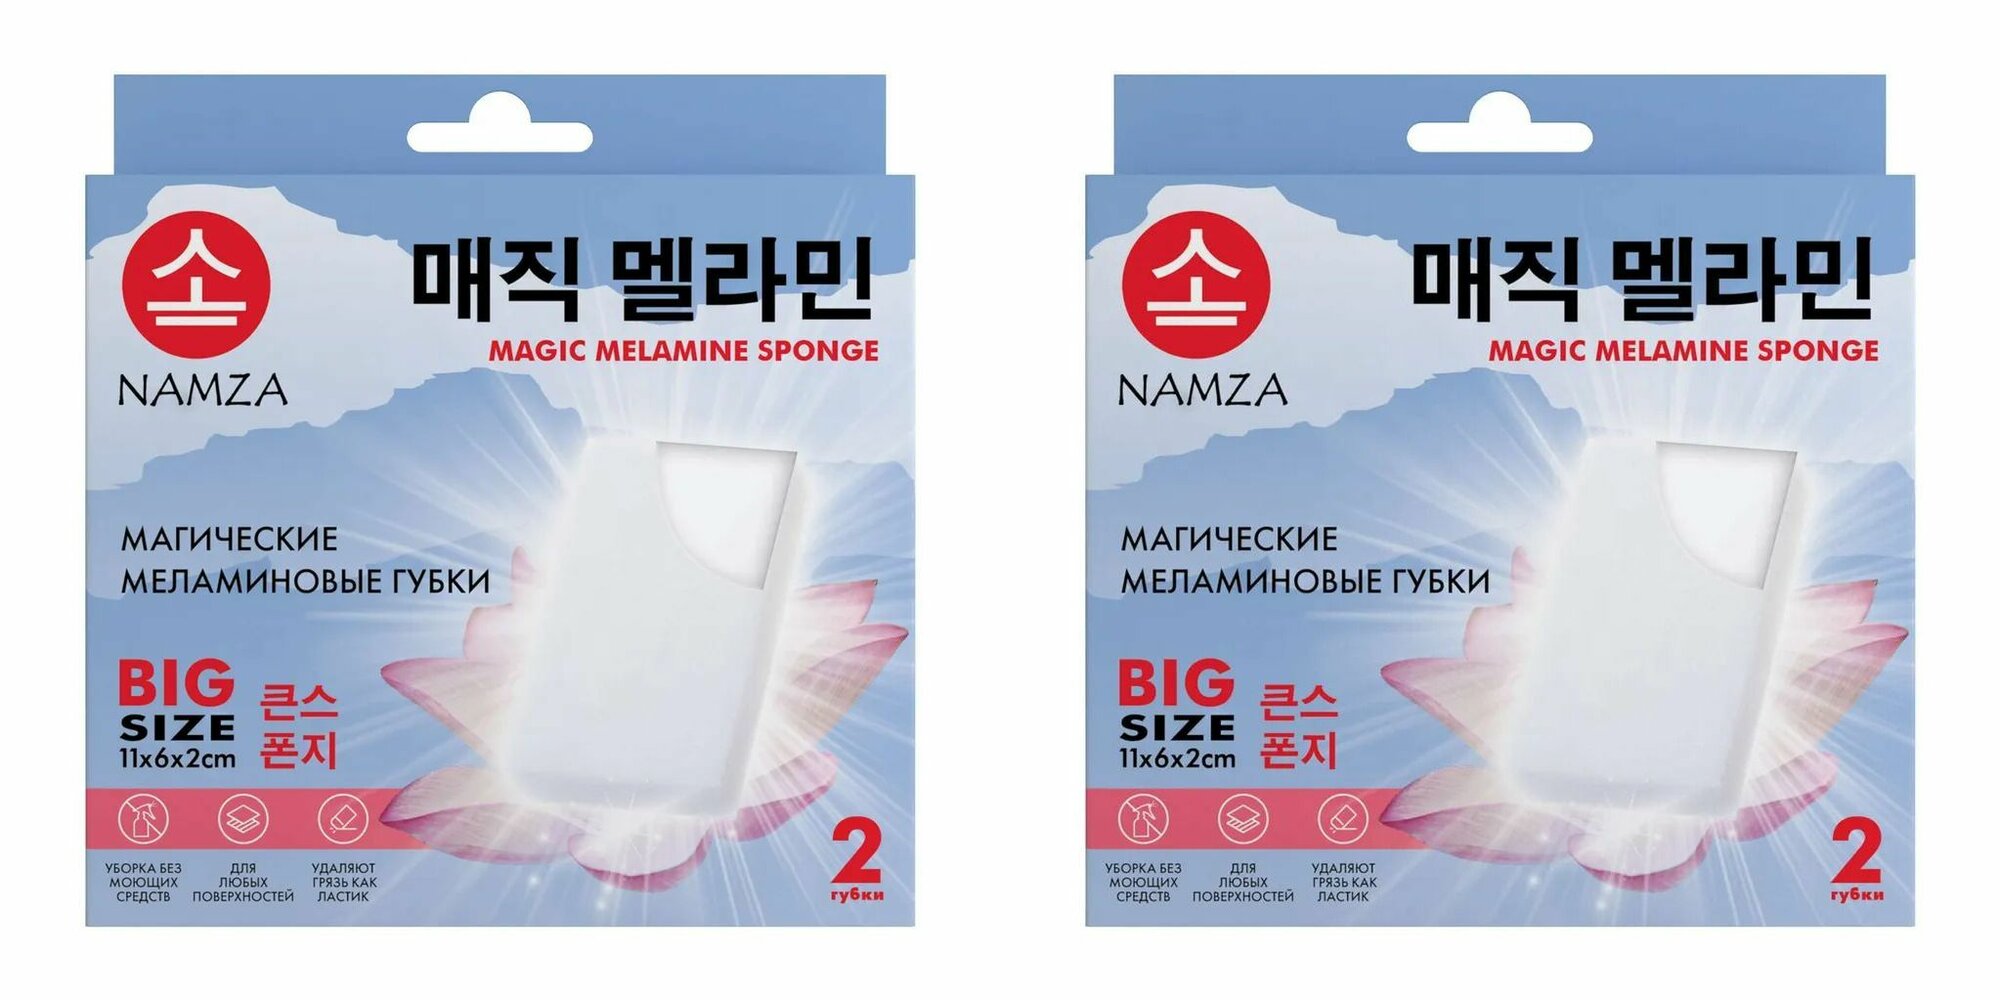 NAMZA Меланиновая губка, 2 г, 2 шт, 2 уп